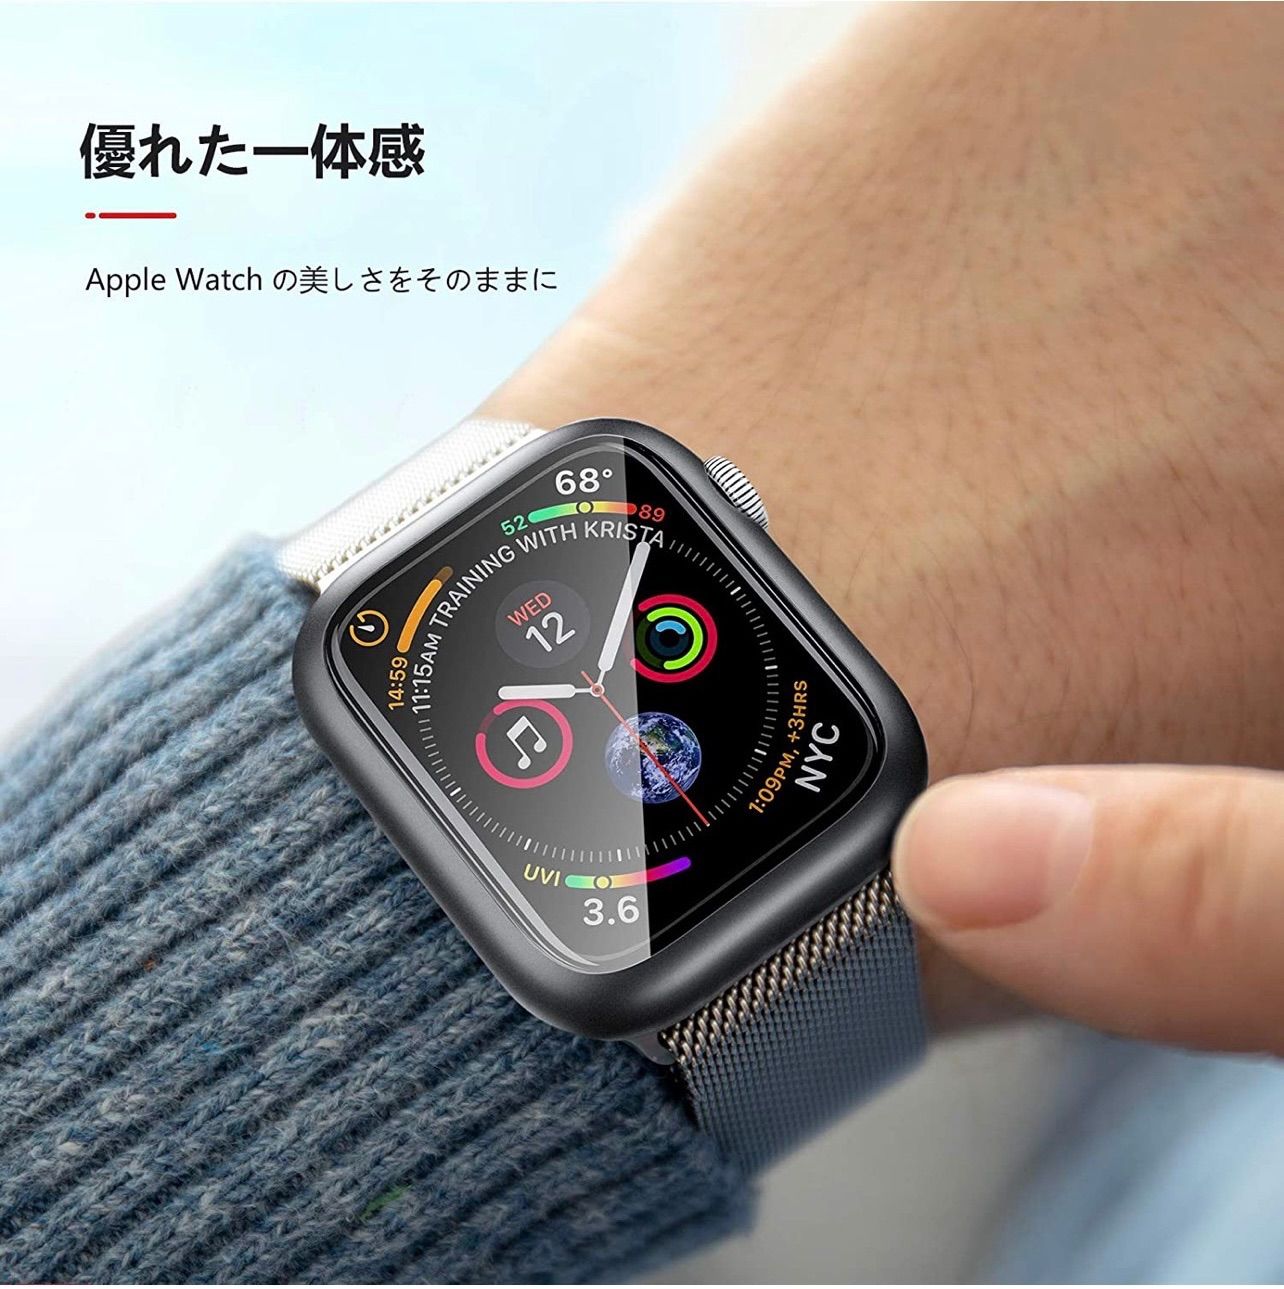 Apple Watch Case-SportsSilver 腕時計